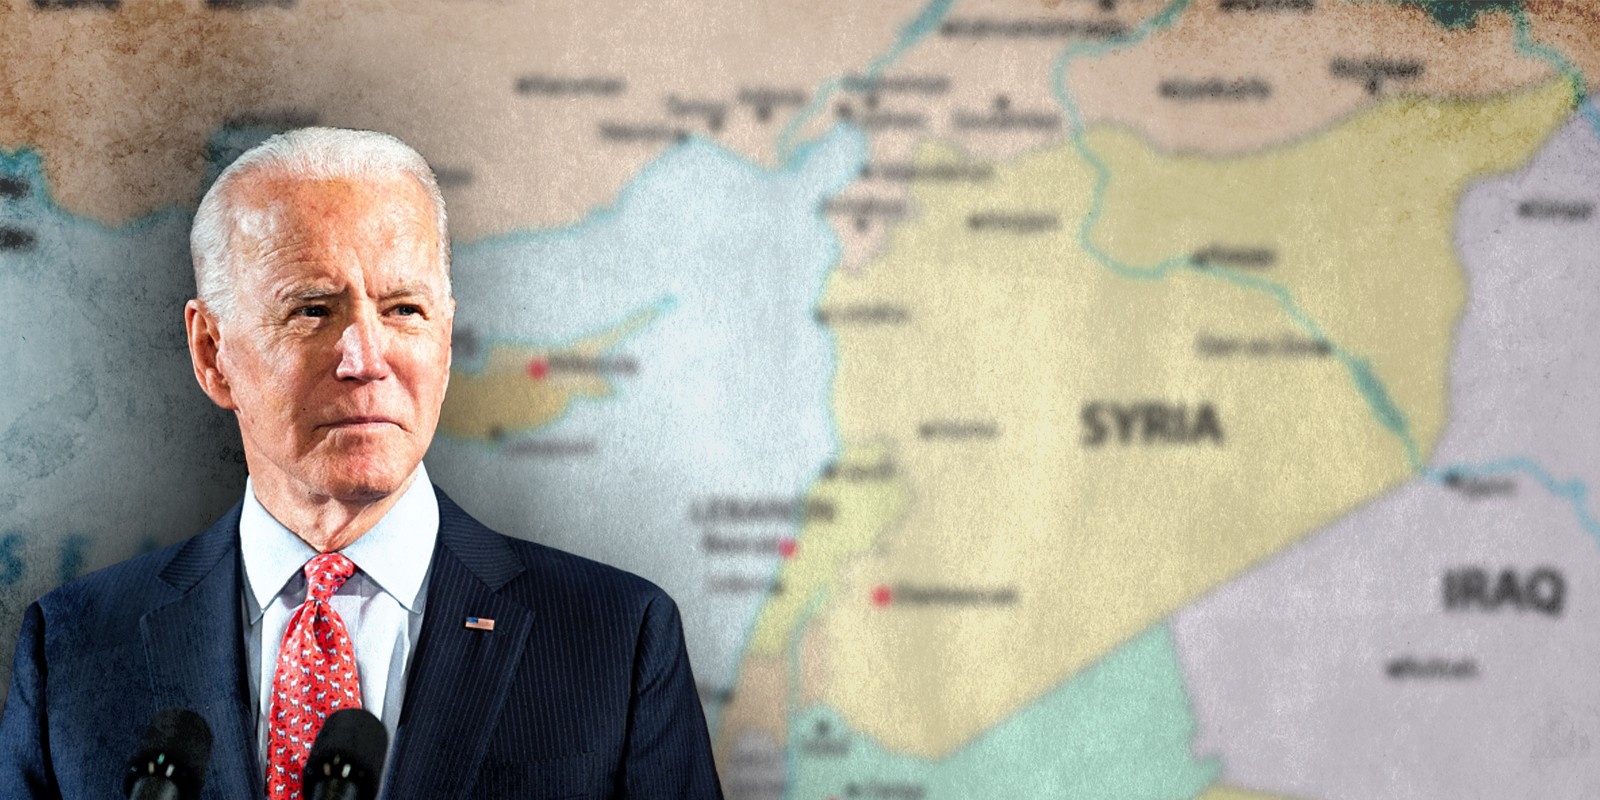 BIDEN WITH SYRIA MAPS BACKGROUND